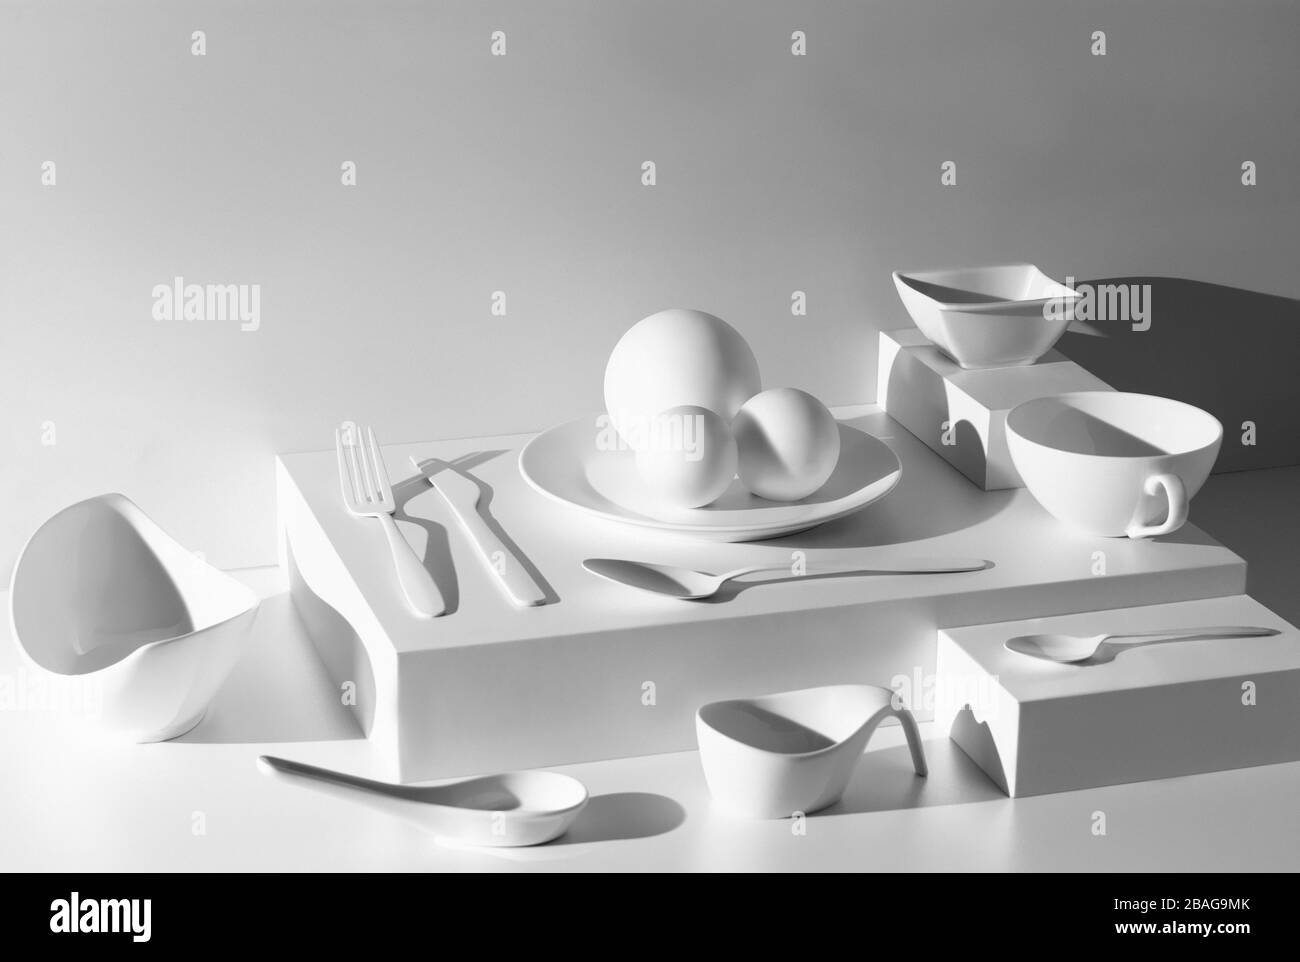 Couverts et vaisselle blanche sur fond blanc sans ombre, illustration d'ustensiles de cuisine incolore Banque D'Images